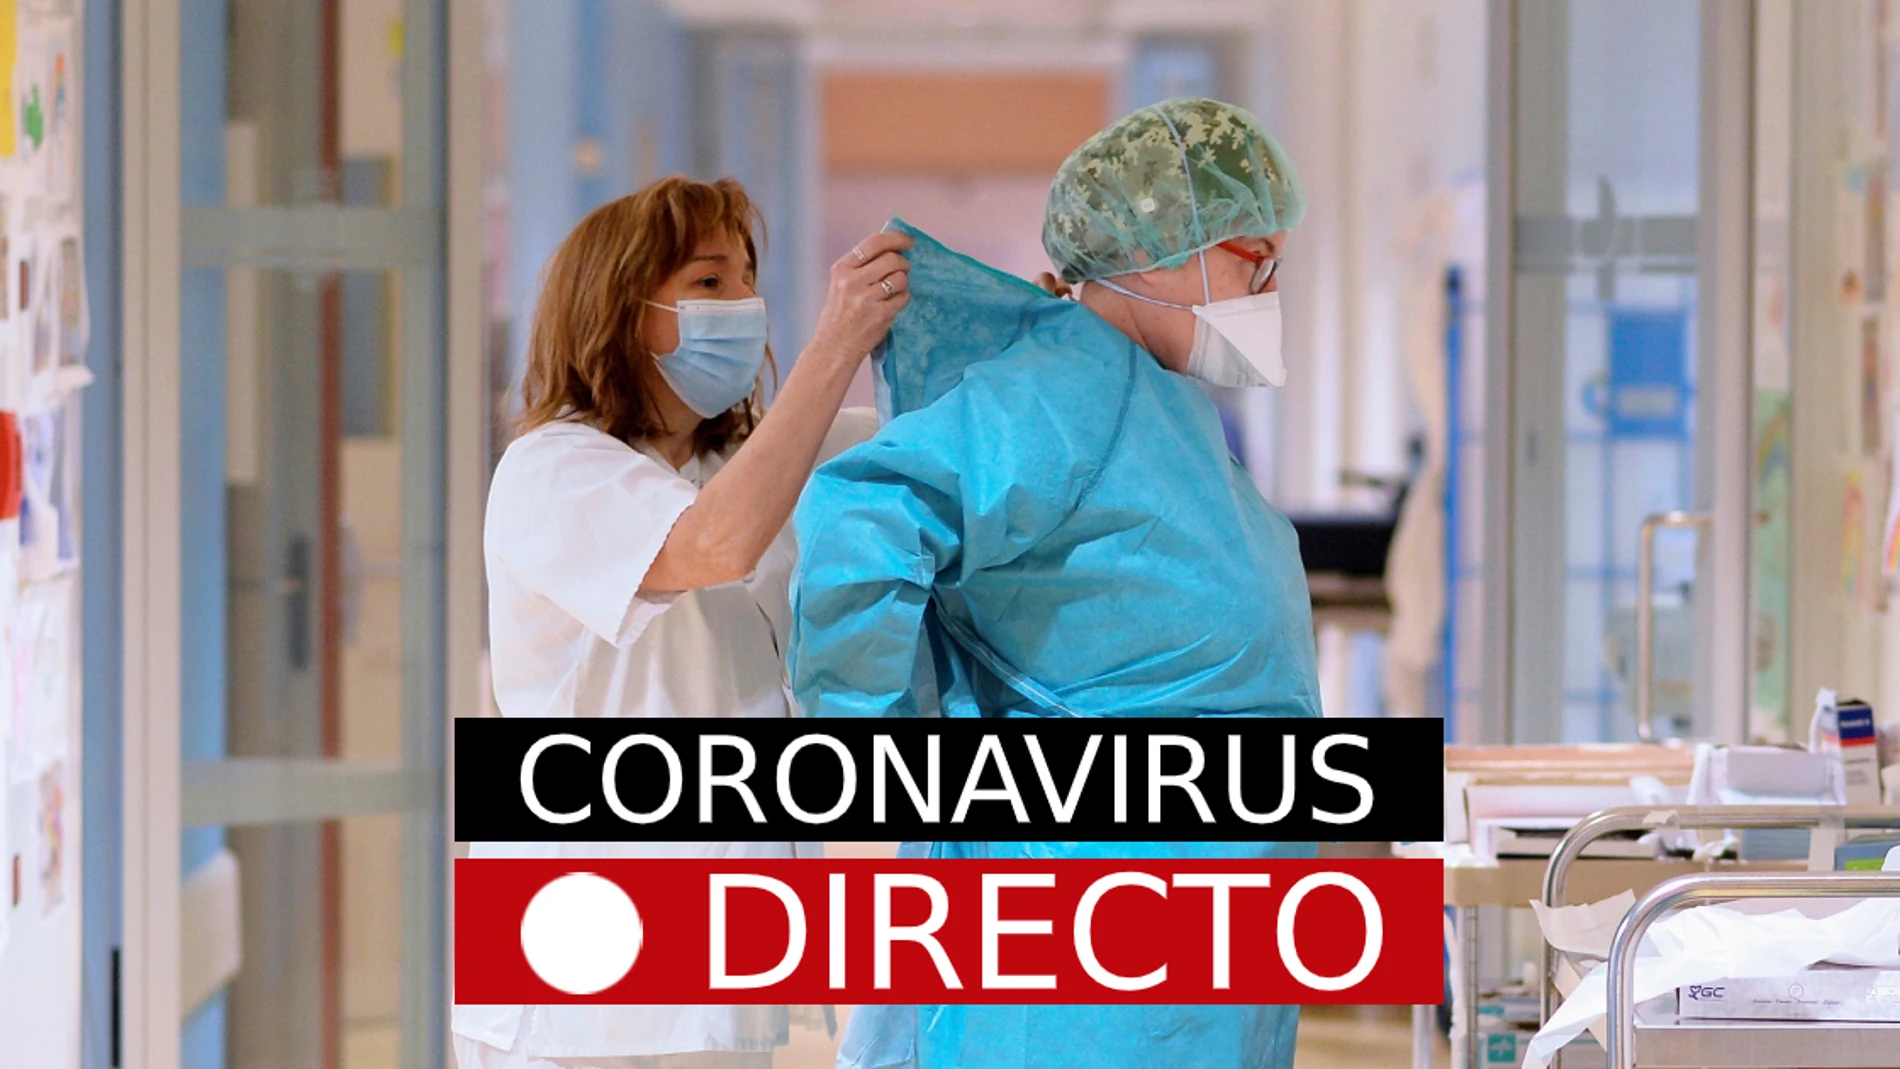 COVID-19, hoy | Nuevas medidas en España por el coronavirus, confinamiento y restricciones, en directo